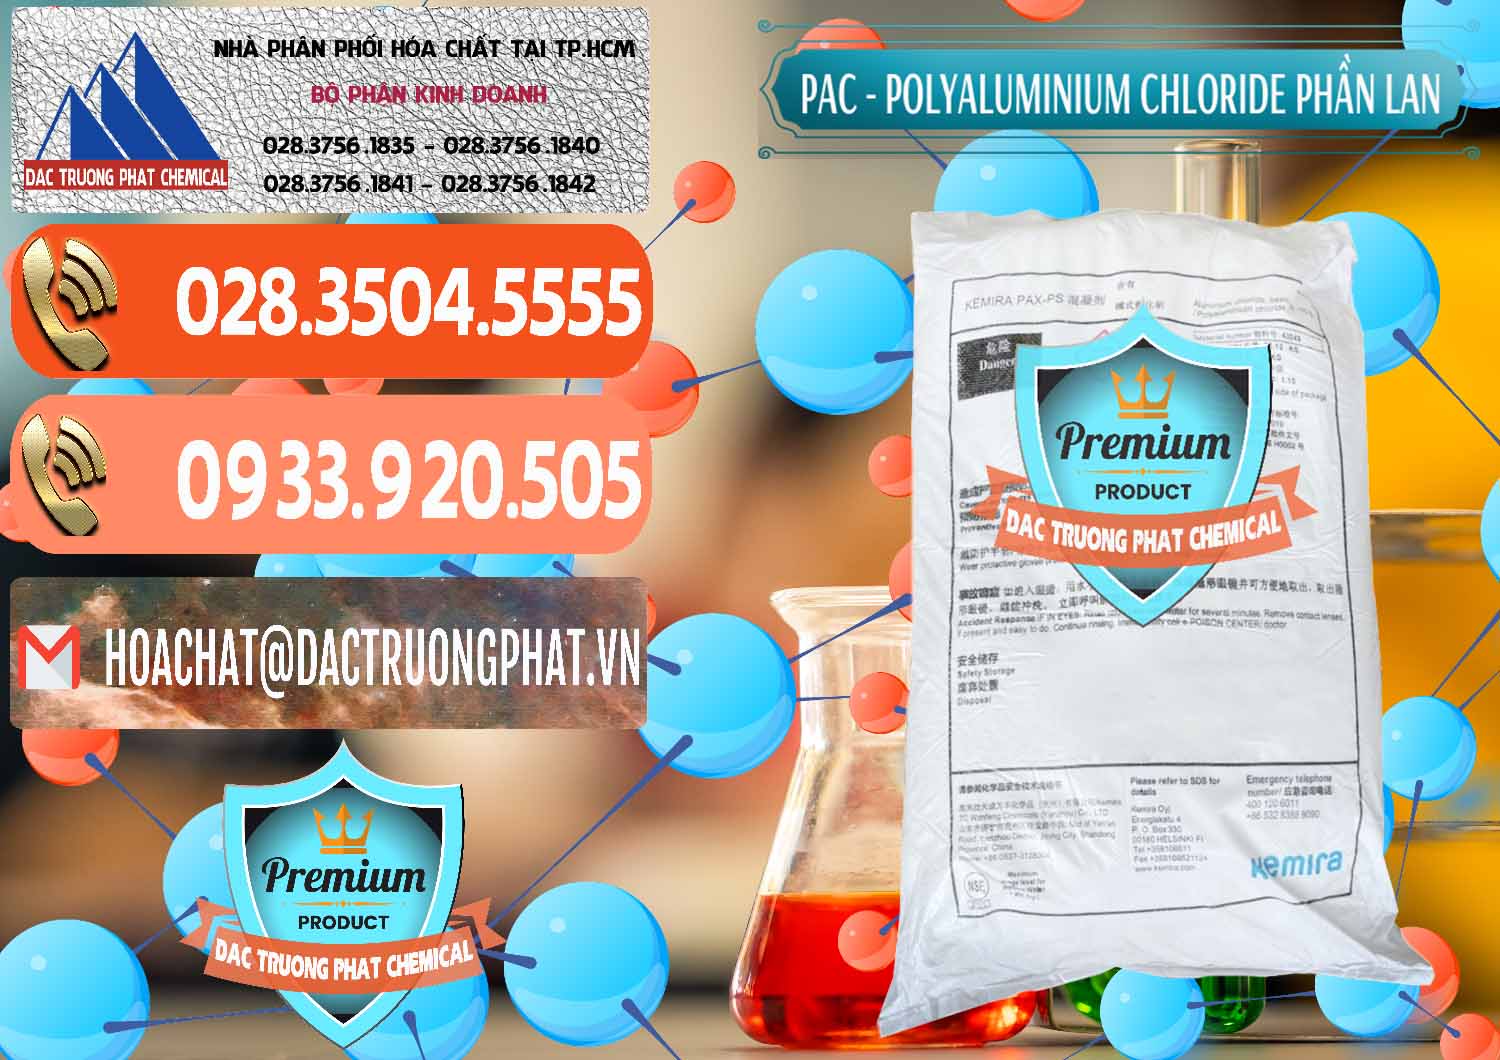 Đơn vị nhập khẩu & bán PAC - Polyaluminium Chloride Phần Lan Finland - 0383 - Đơn vị chuyên cung ứng - phân phối hóa chất tại TP.HCM - hoachatmientay.com